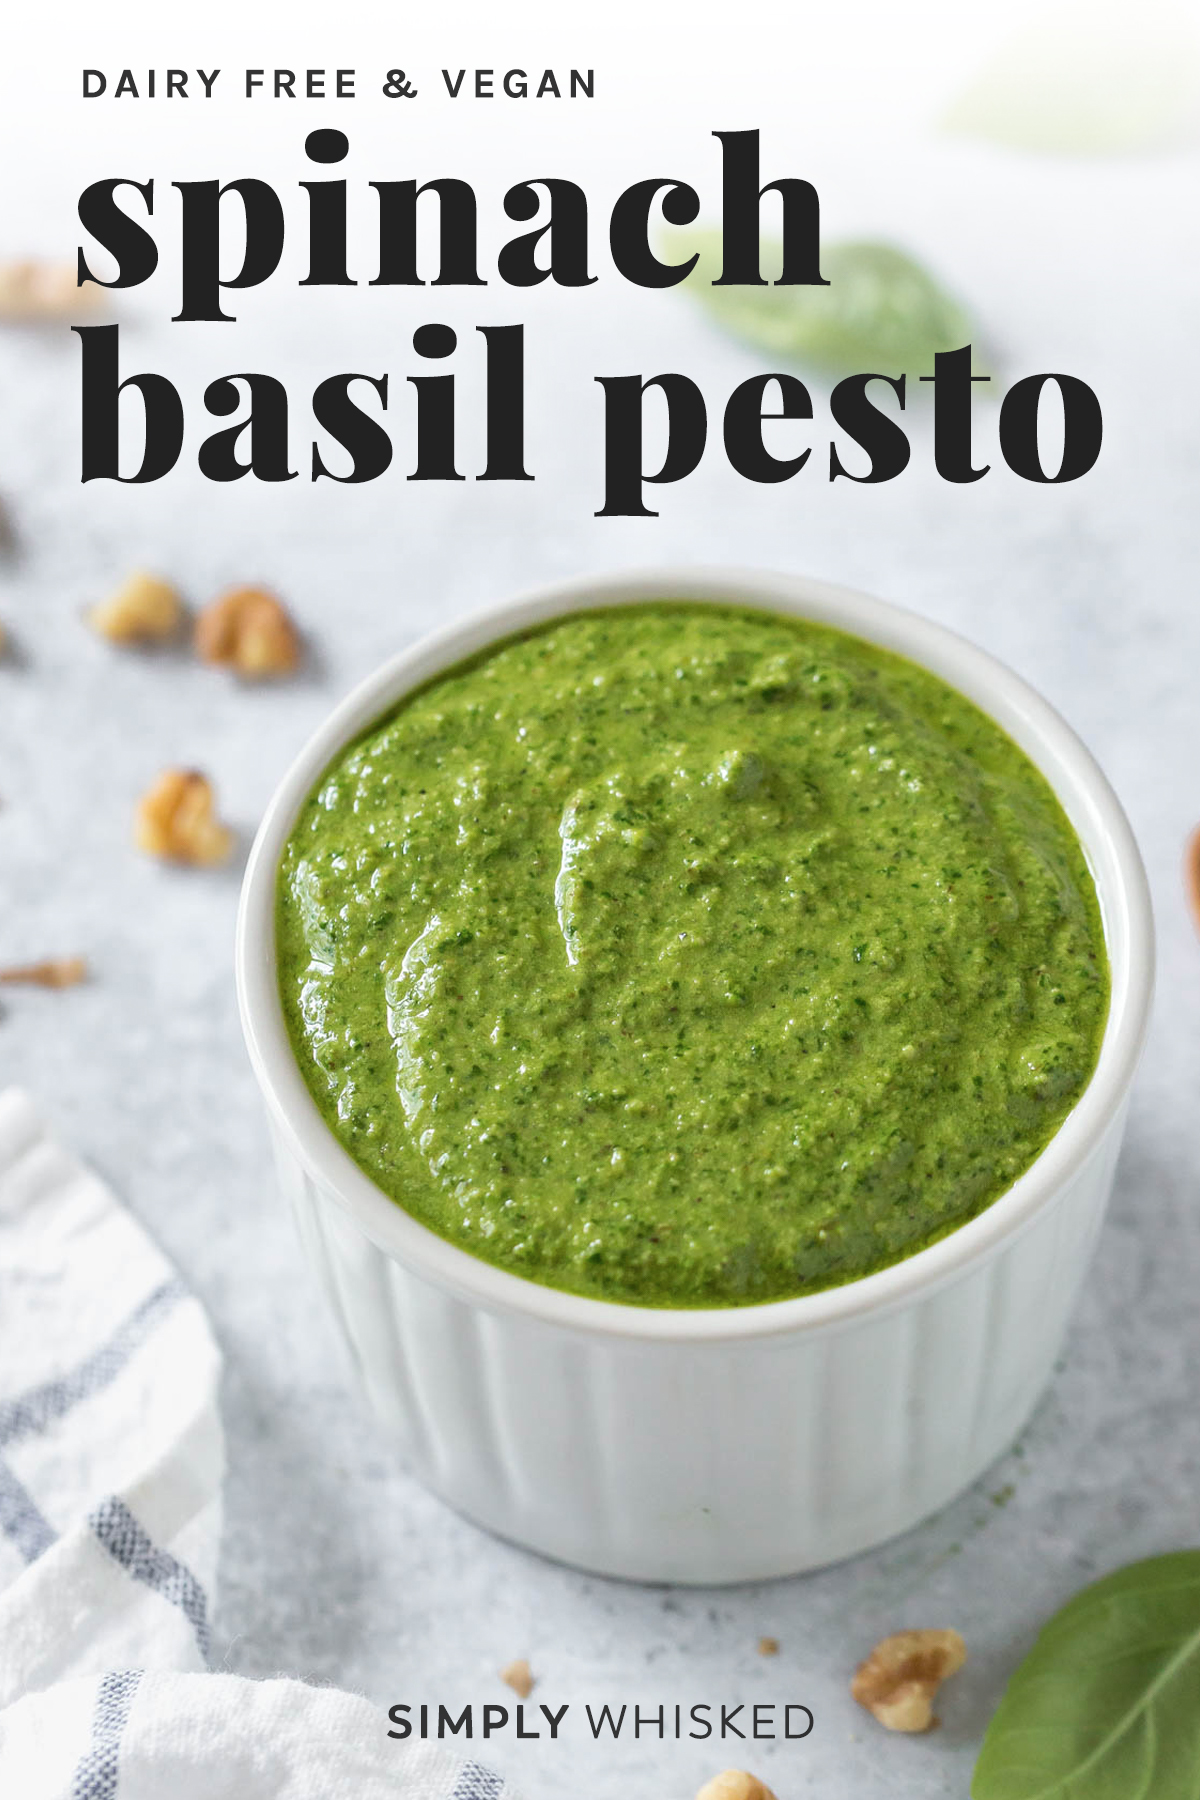 spinach basil pesto (dairy free recipe)